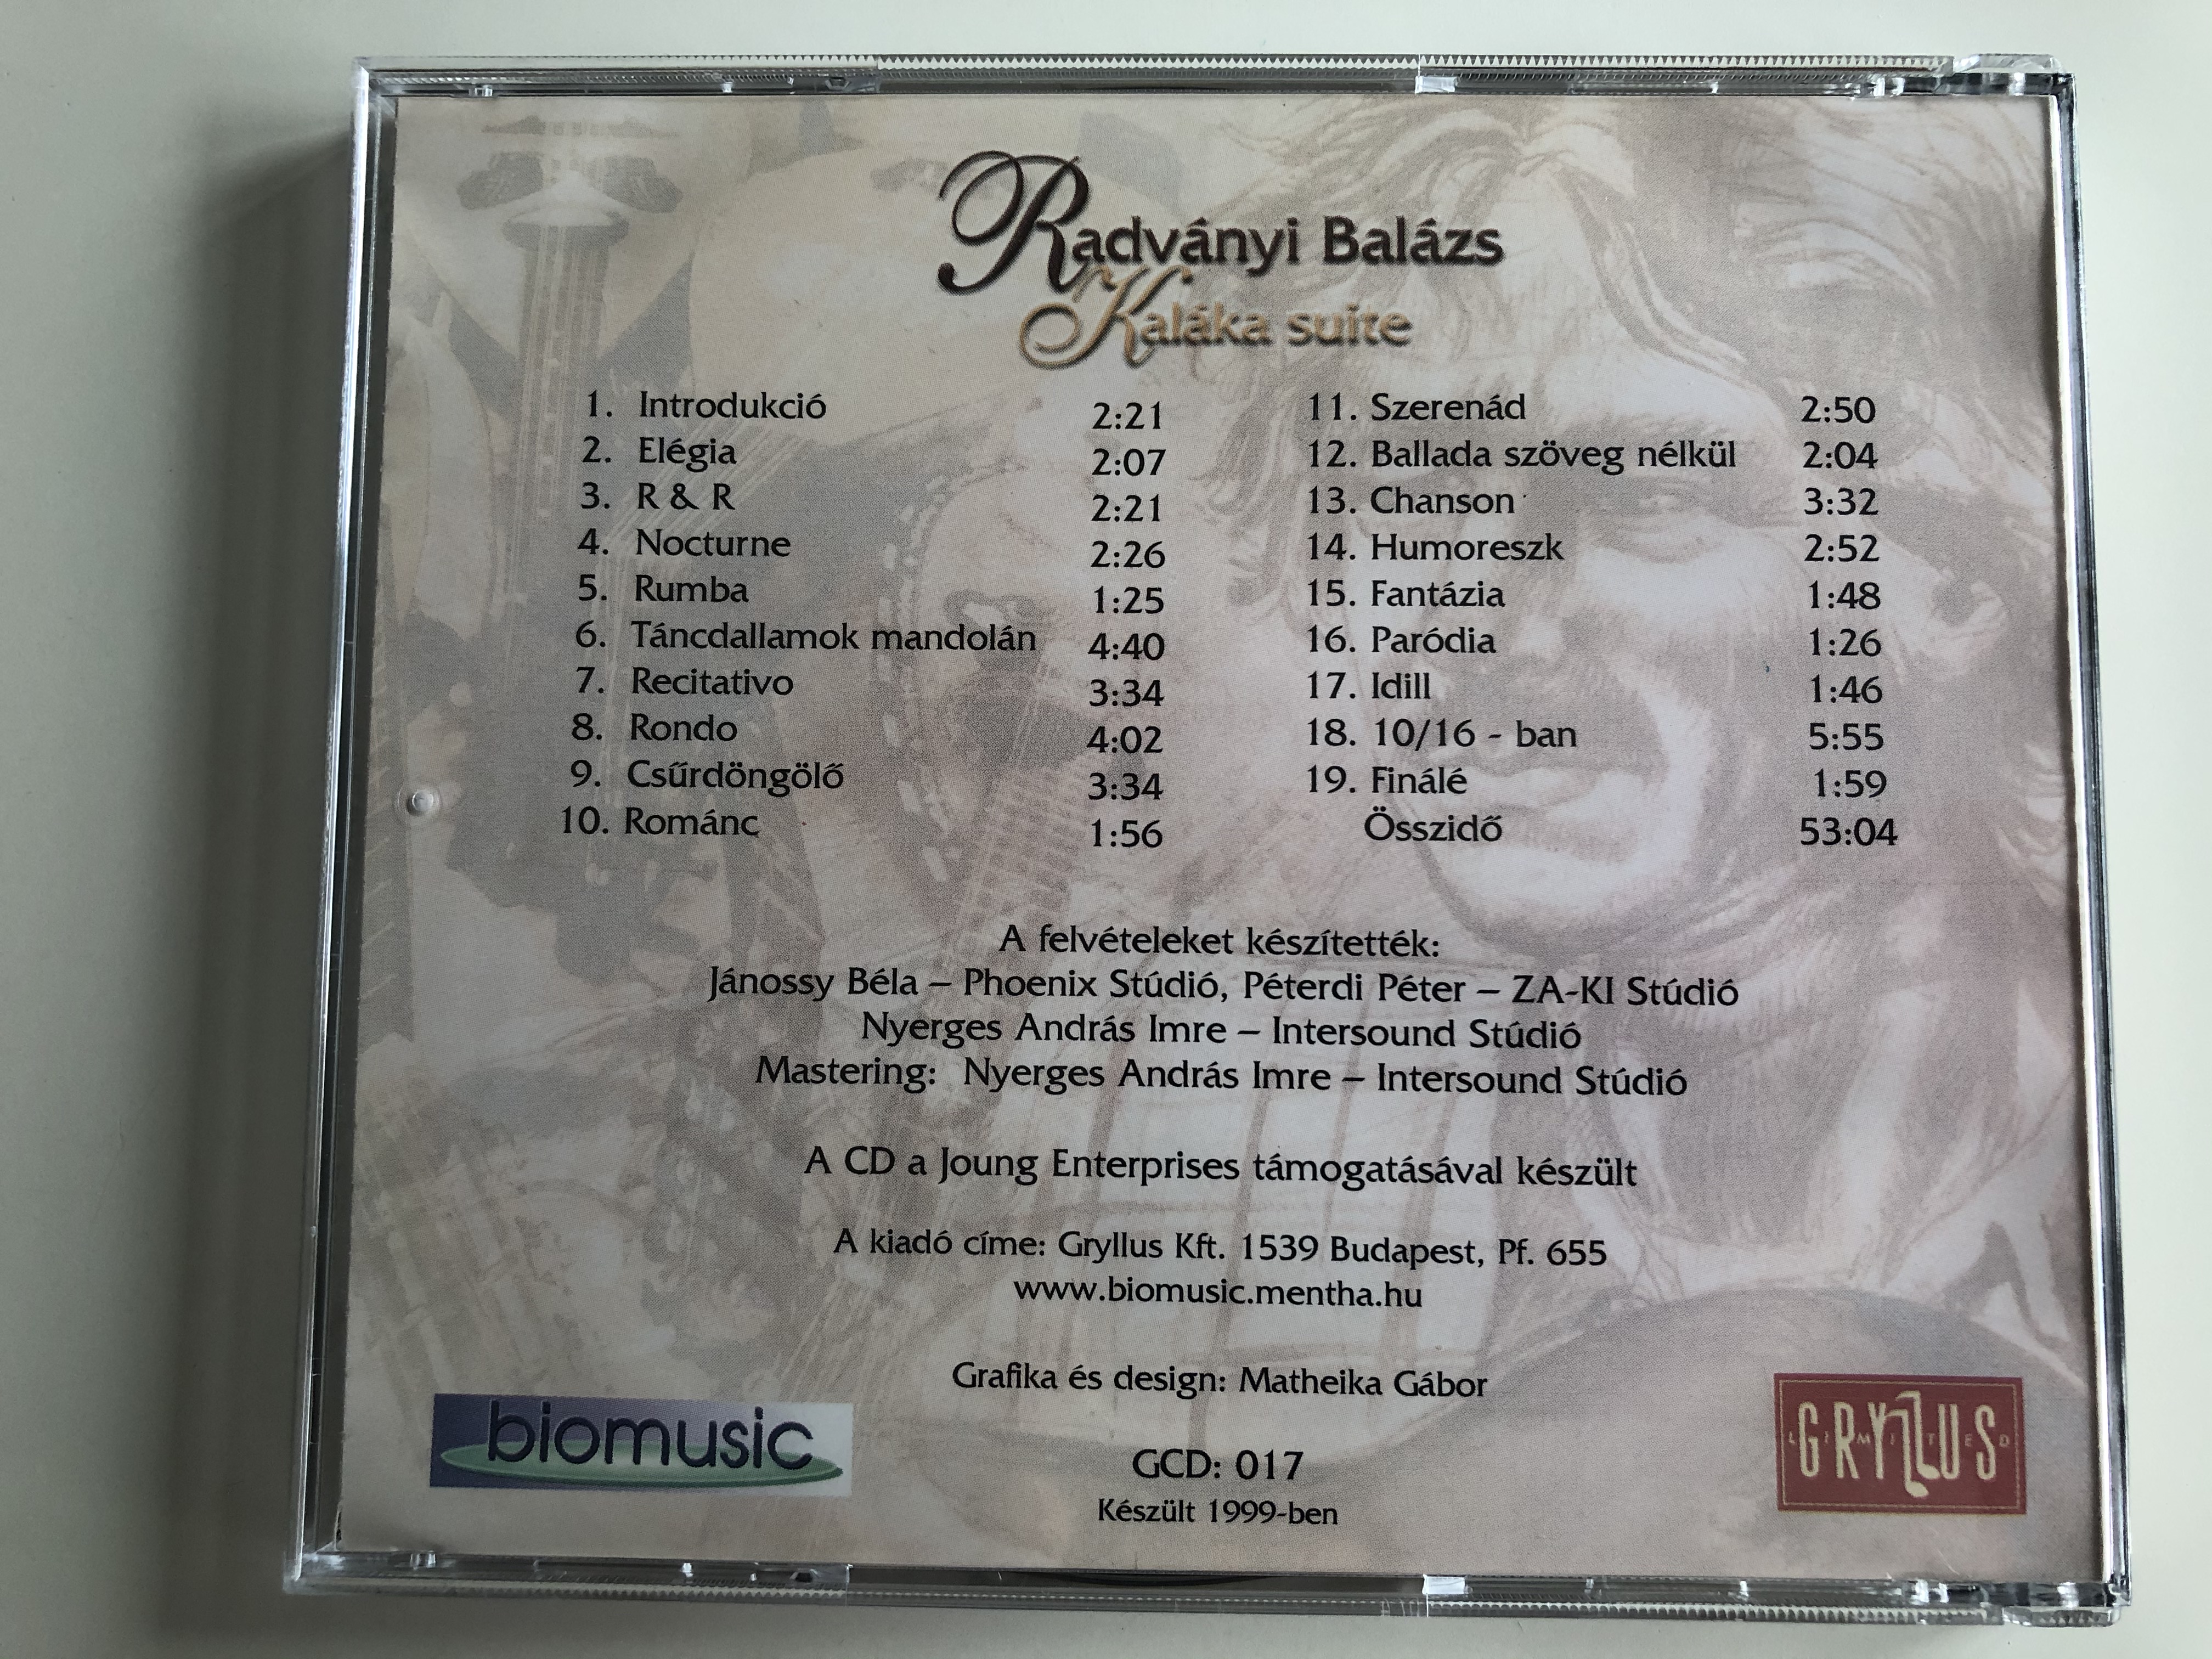 radv-nyi-bal-zs-kalaka-suite-gryllus-audio-cd-1999-gcd-017-4-.jpg